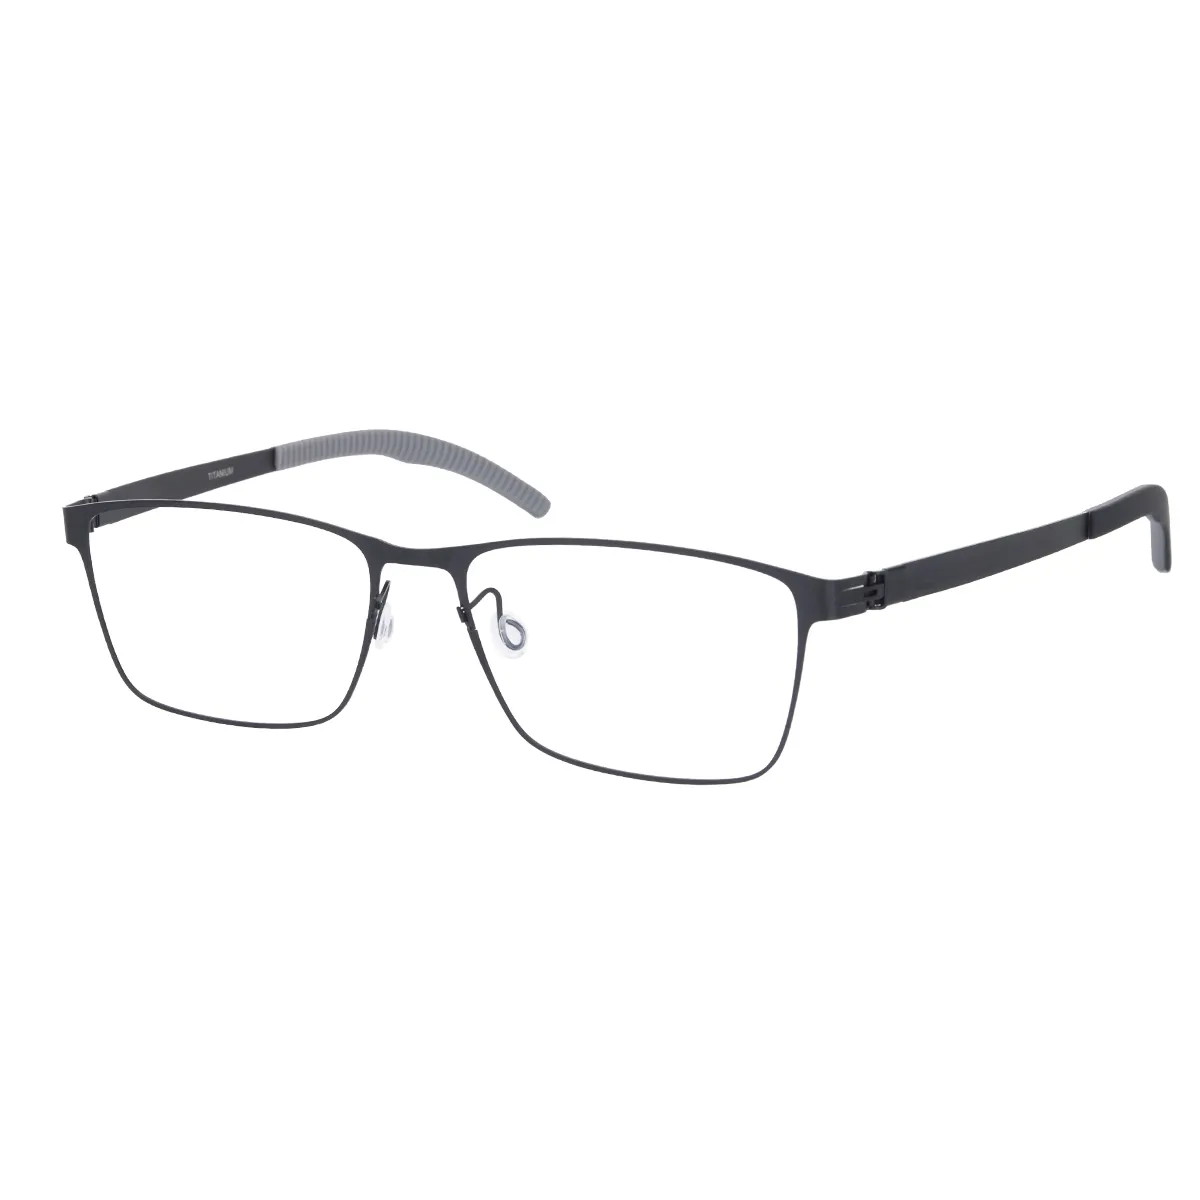 Howard - Square Black Glasses for Men - EFE